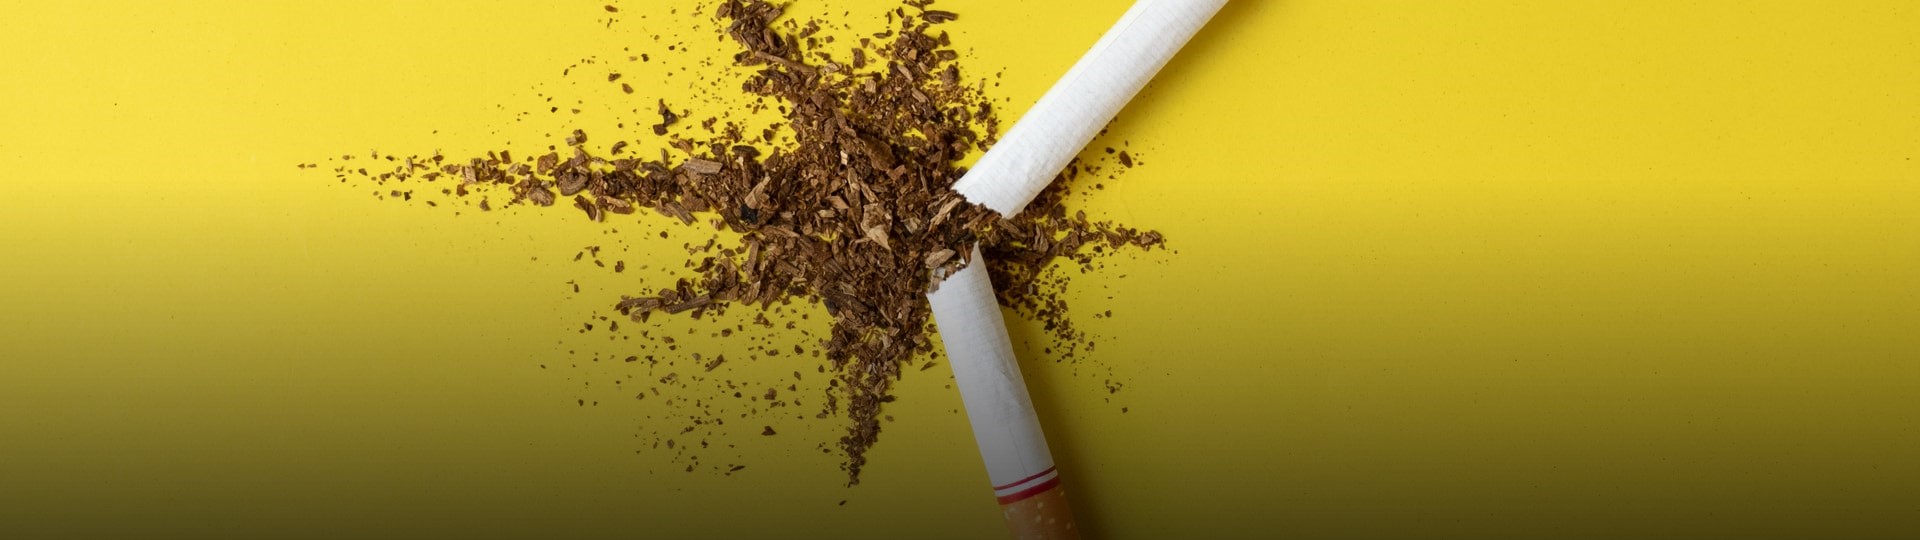 Akcie tabákových firem klesají po zprávě o snížení nikotinu v cigaretách